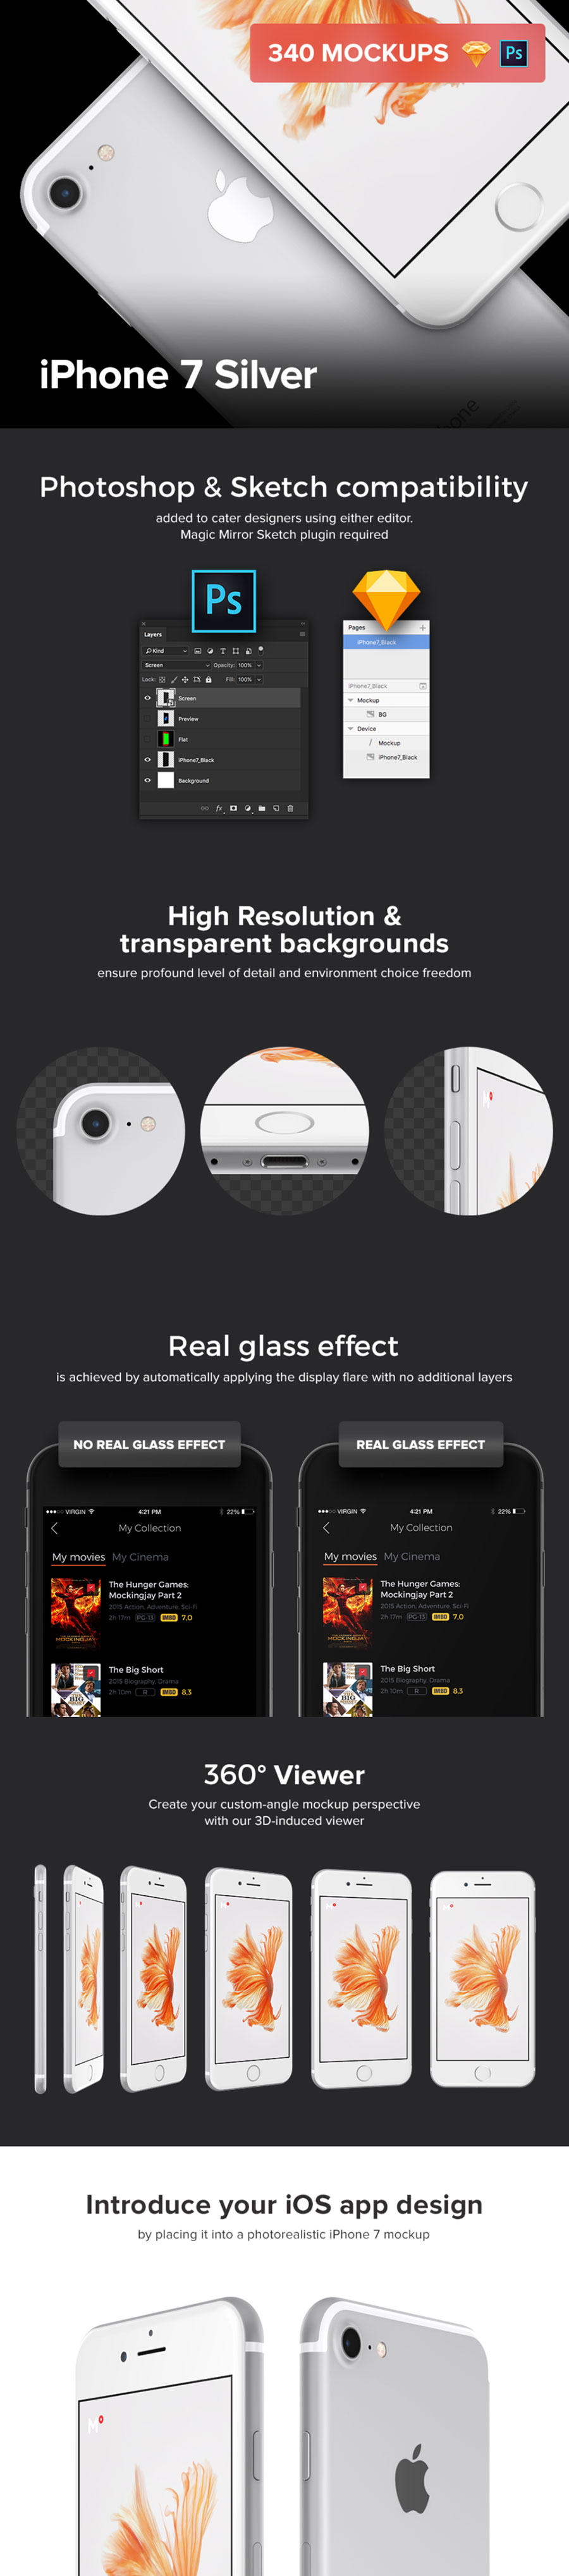 一套完美的iPhone7 360度展示模型银白色版下载[PSD,Sketch,360度HTML效果]